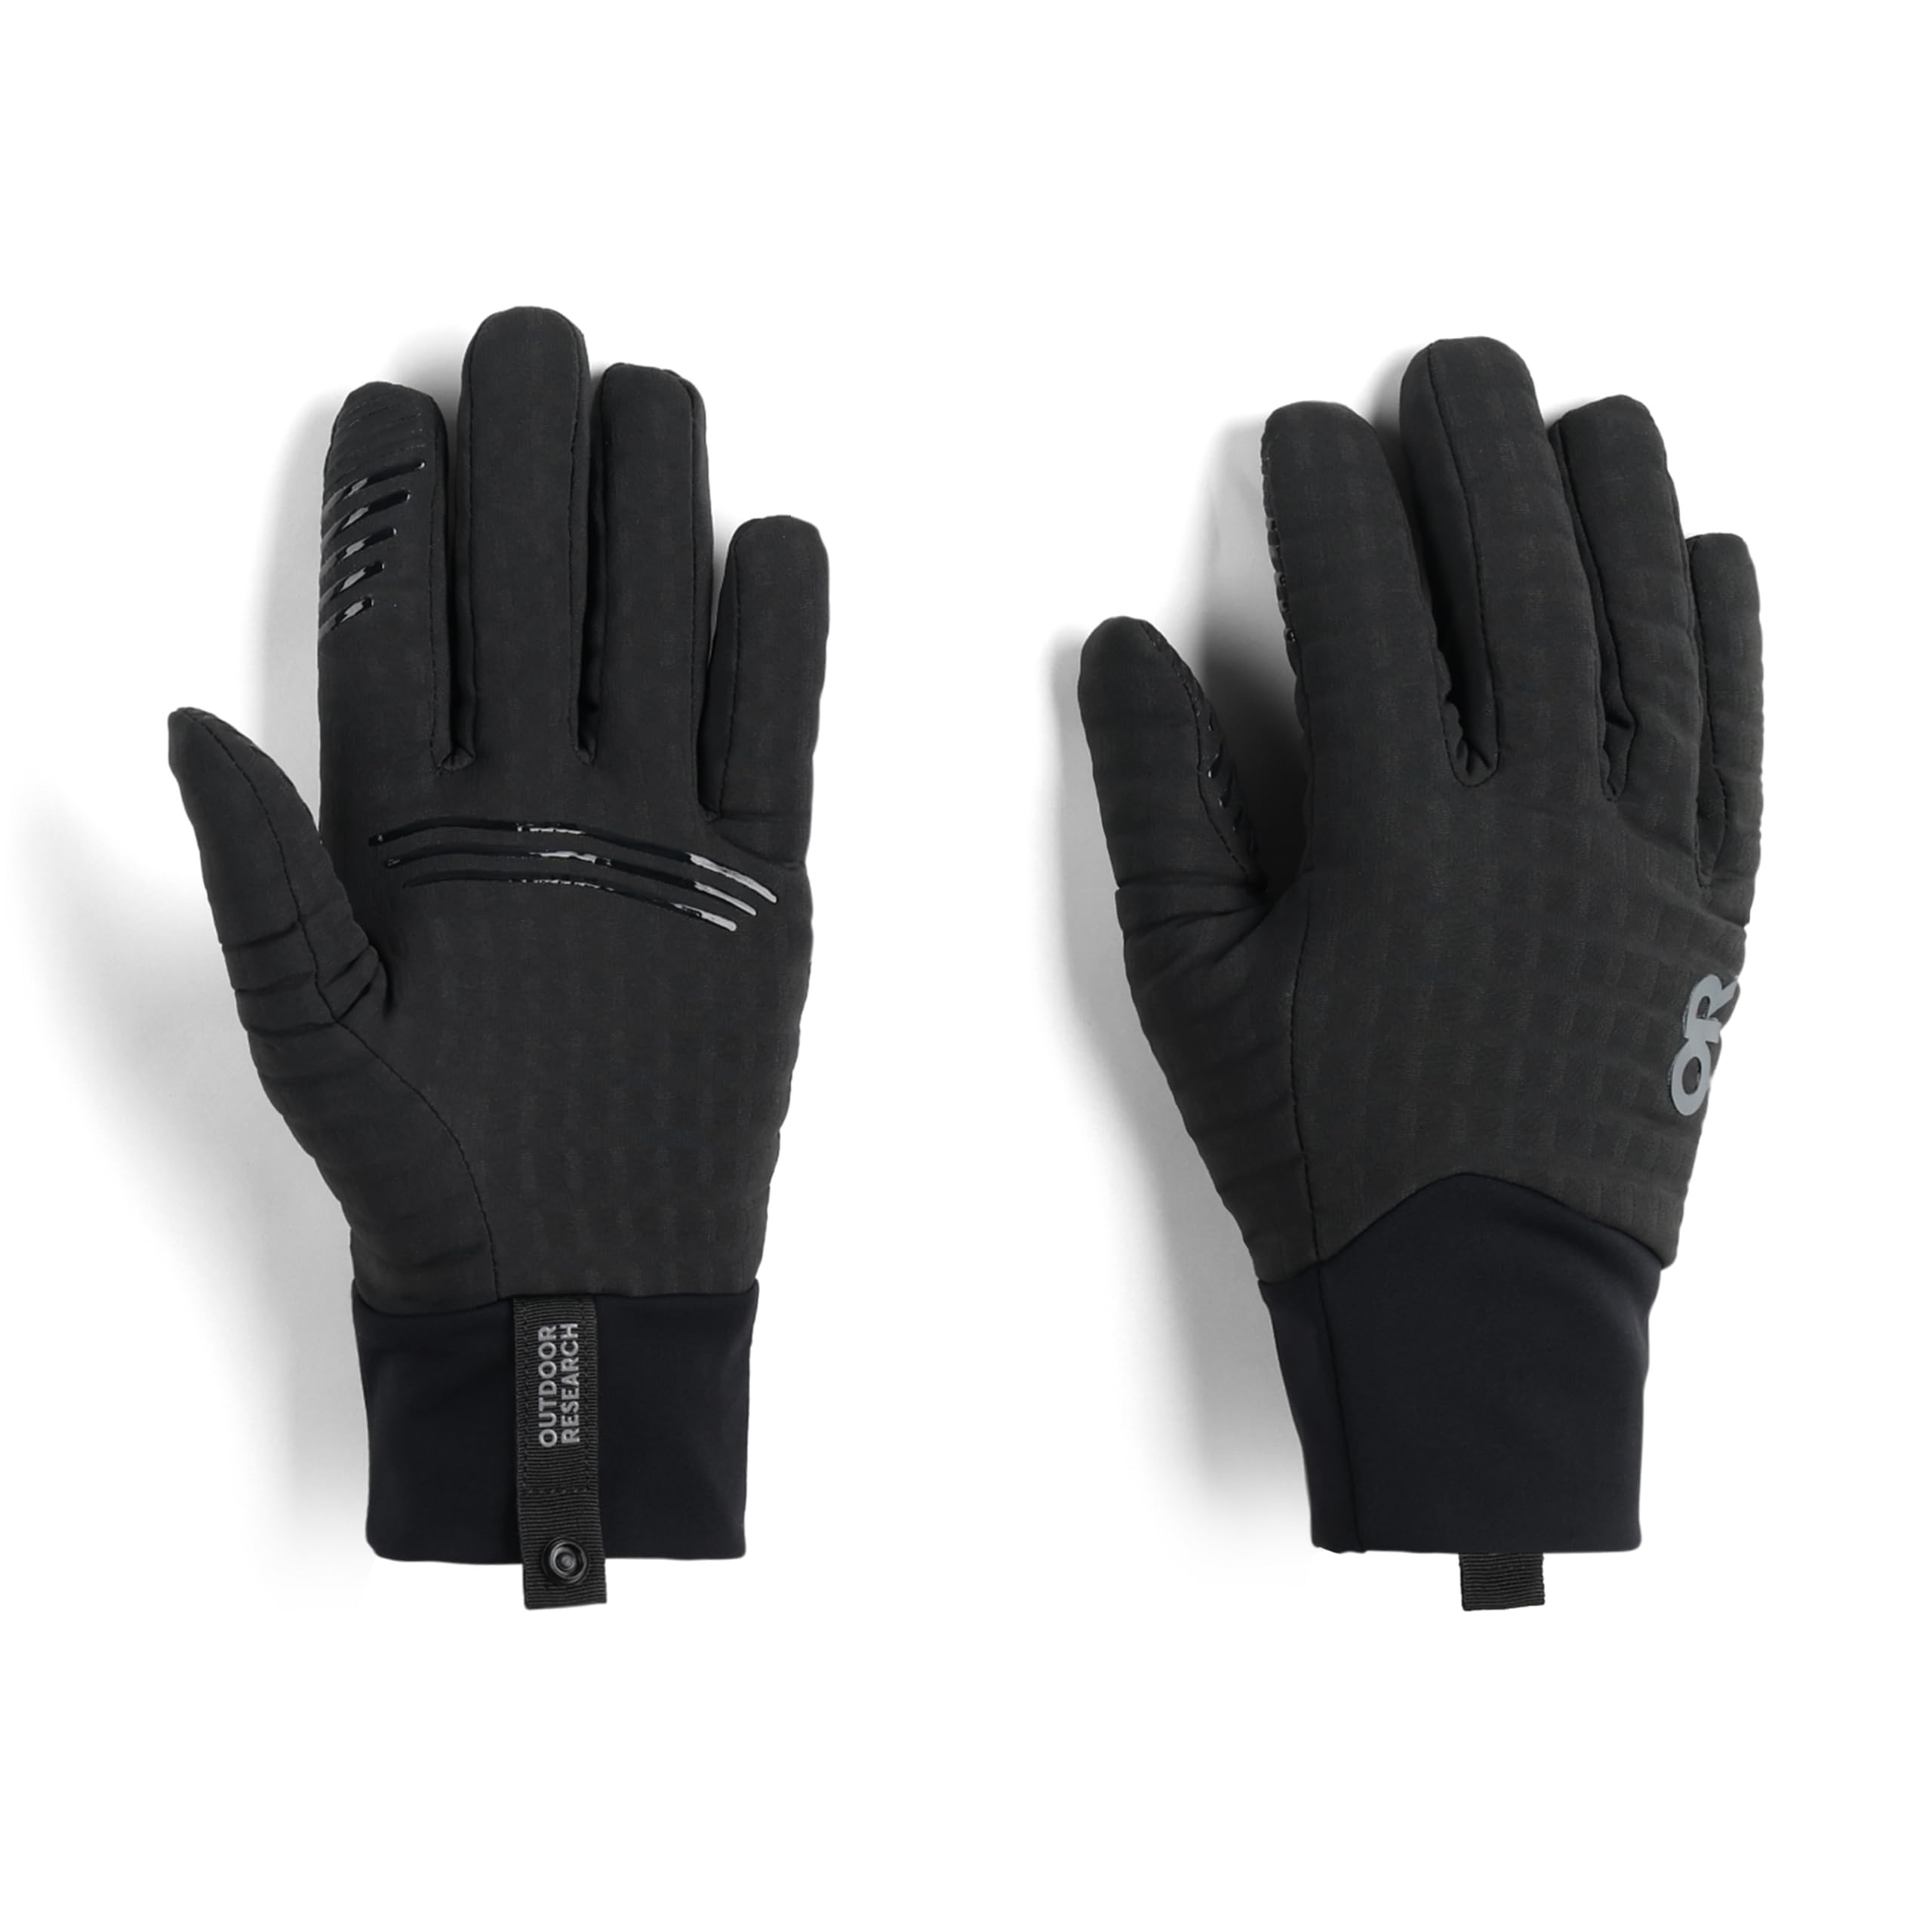 Тяжелые сенсорные перчатки Vigor Outdoor Research